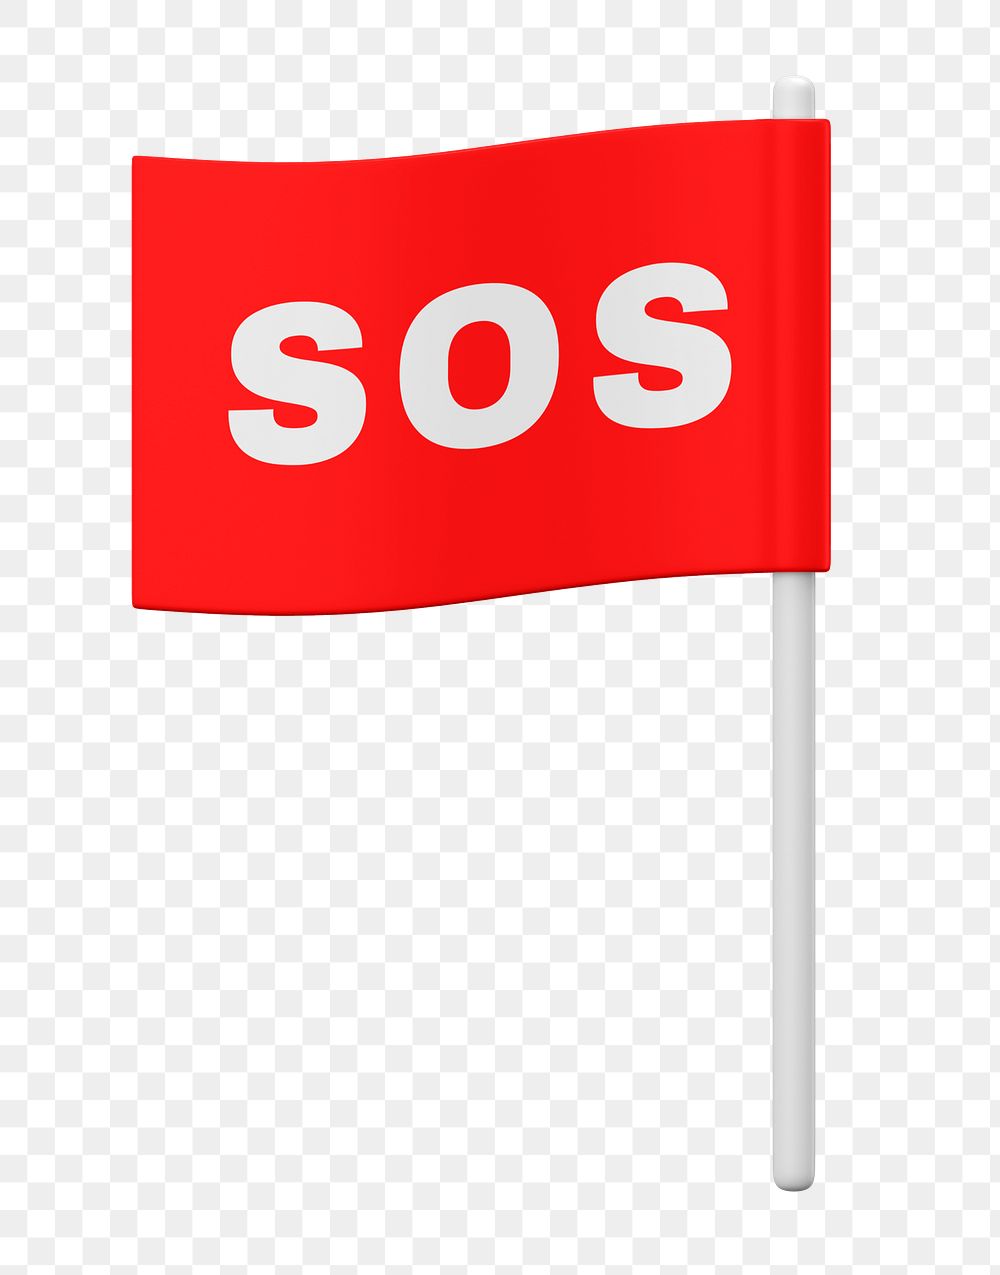 SOS flag 3D png sticker, transparent background